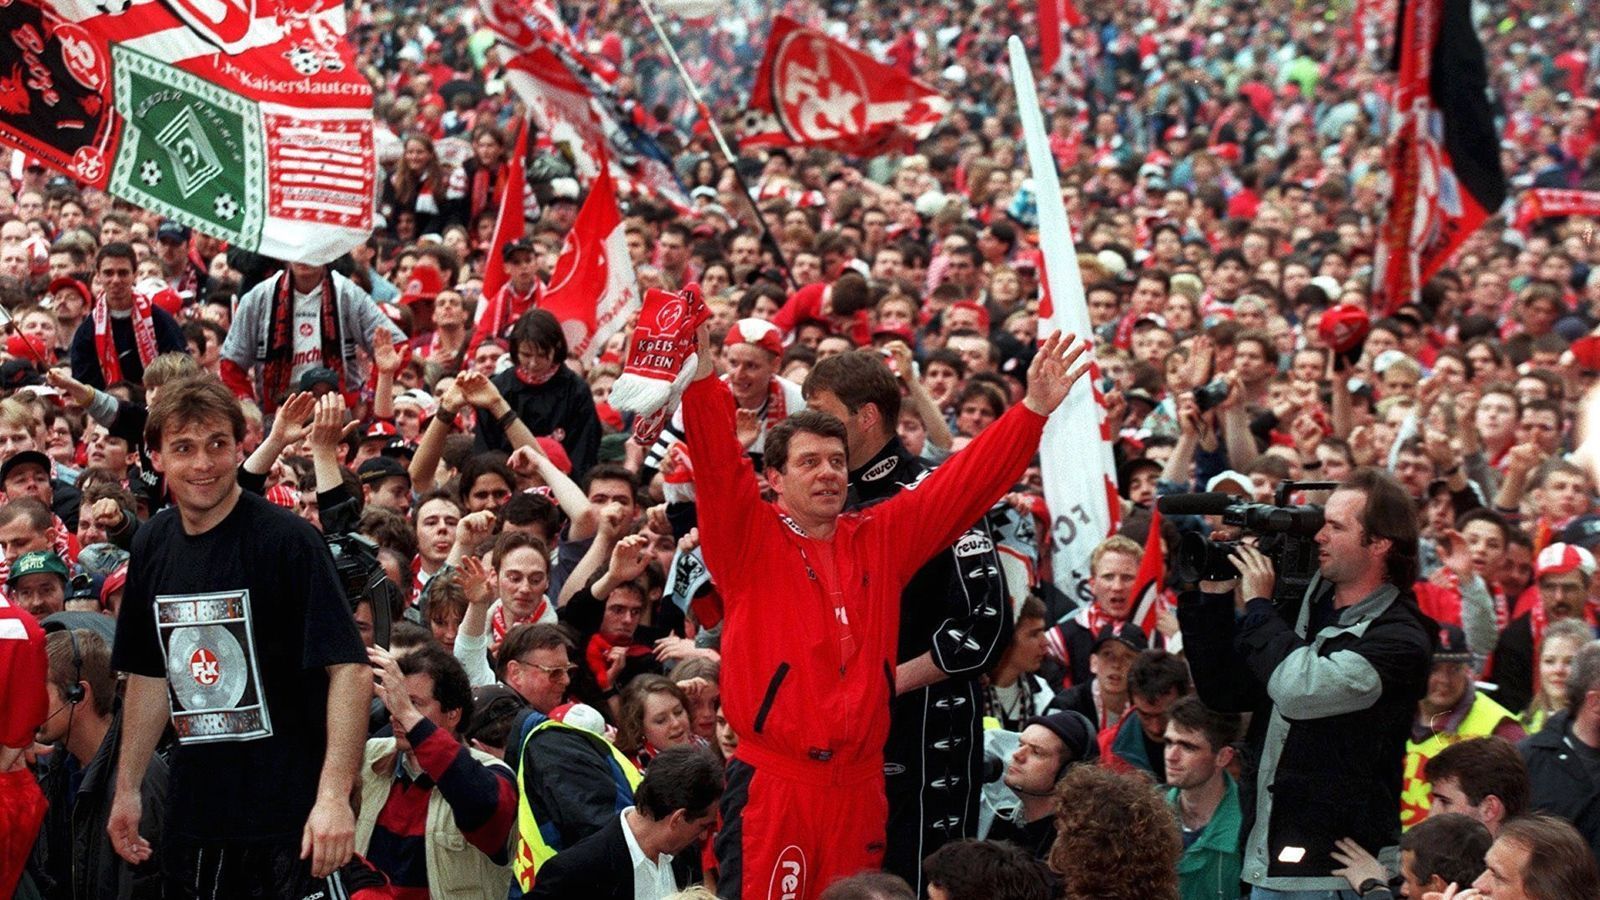 
                <strong>Als Kroatien 1998 zuletzt im WM-Halbfinale steht ...</strong><br>
                ... heißt der Deutsche Meister 1. FC Kaiserslautern. Der FCK gewinnt als erster Aufsteiger den Titel. Trainer Otto Rehhagel und das Team lassen sich feiern.
              